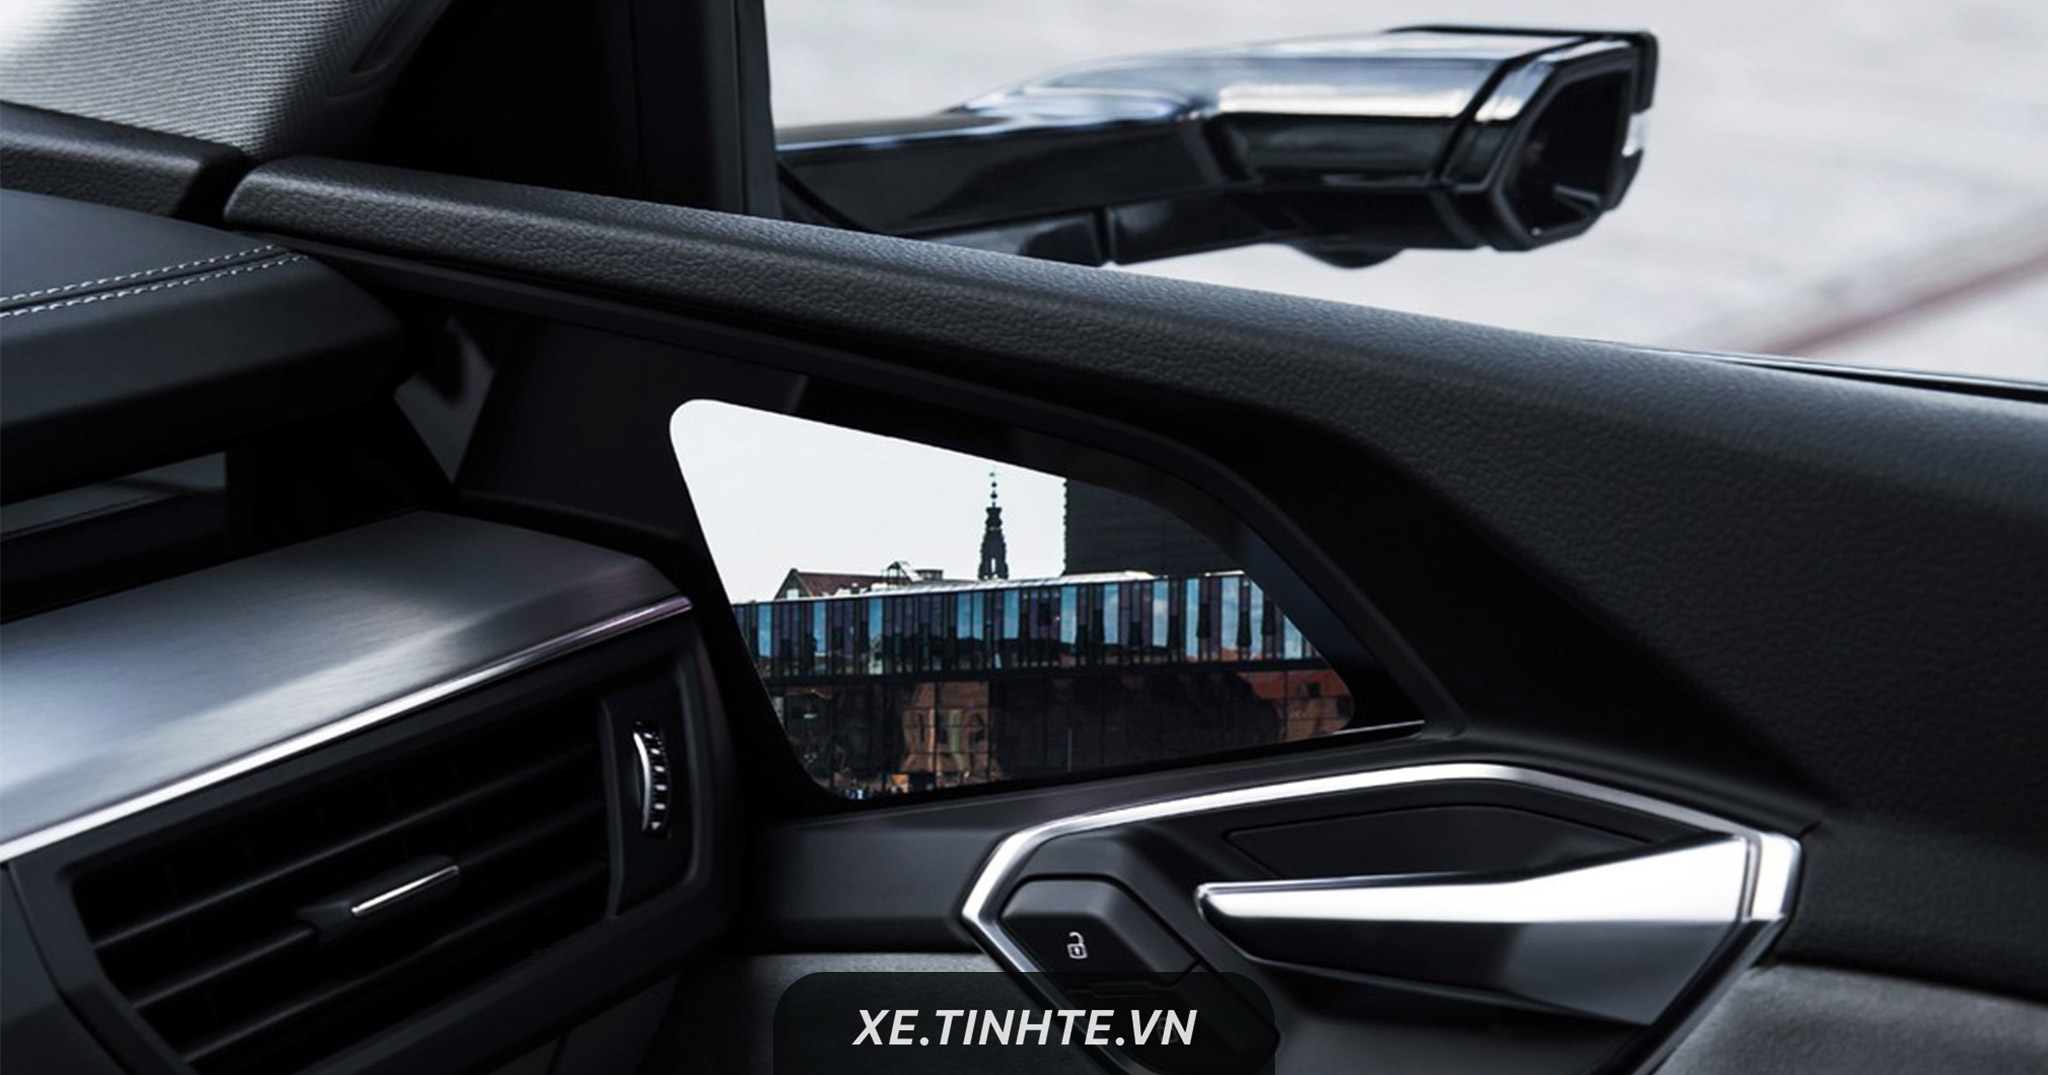 Xe điện Audi E-Tron không dùng gương chiếu hậu, quan sát bằng camera và màn hình trong cabin